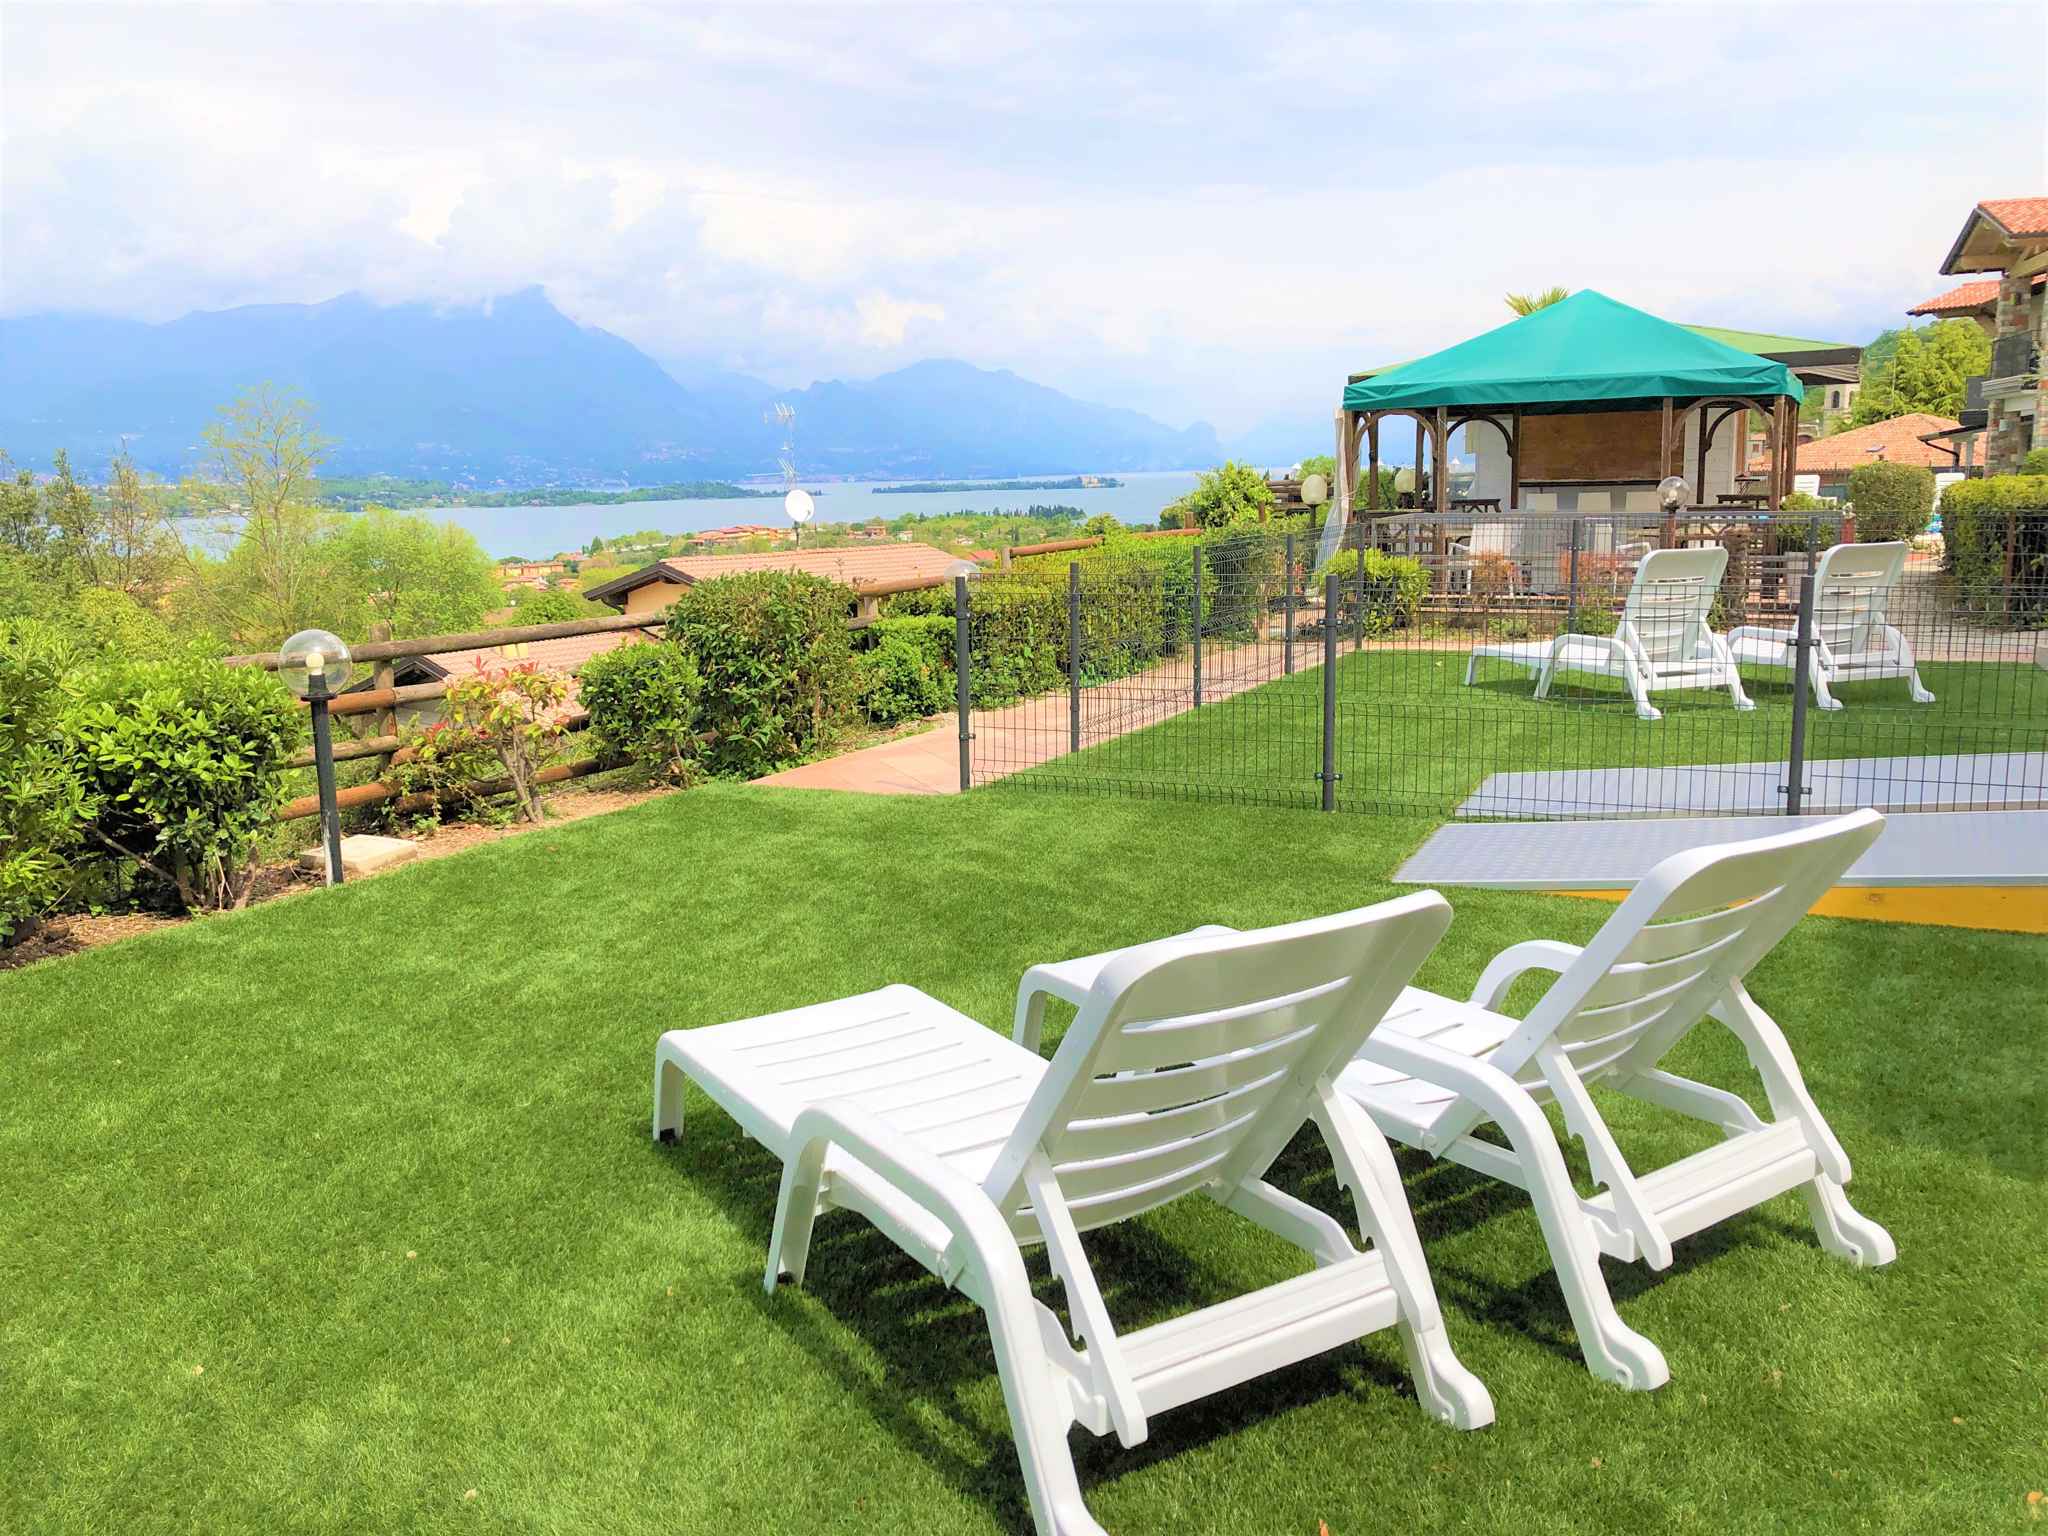 Ferienwohnung in der Residence Bellavista mit Pool   Lombardei